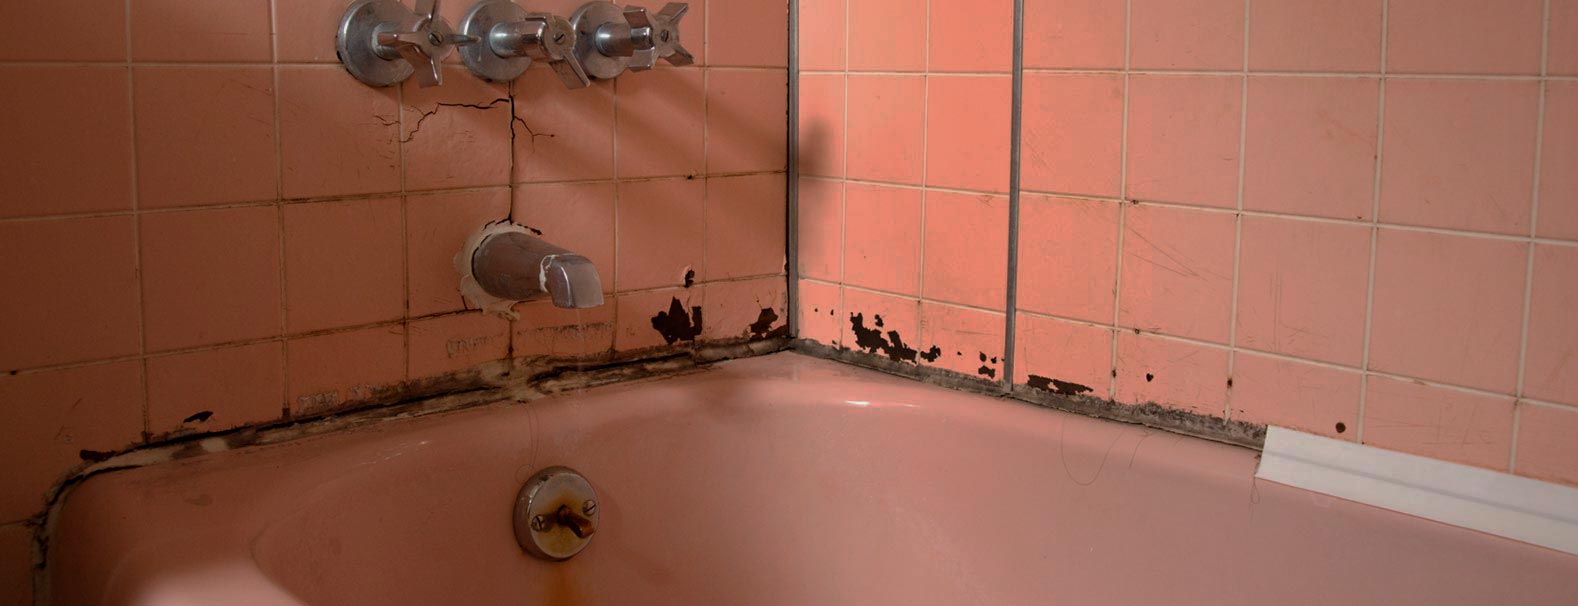 грибки и плесень в ванной комнате